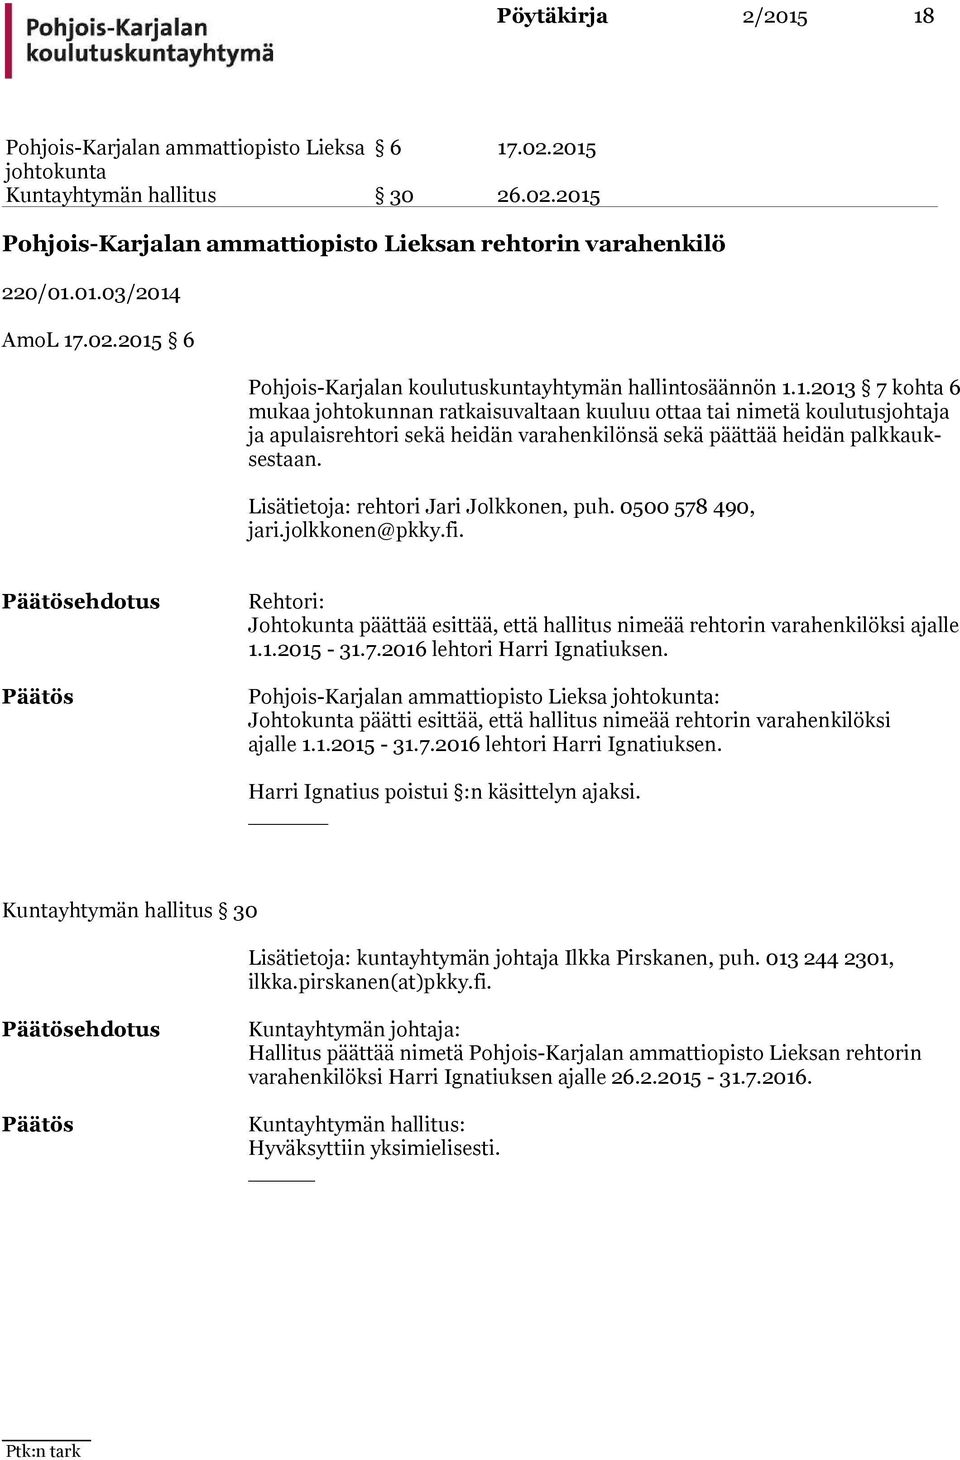 Lisätietoja: rehtori Jari Jolkkonen, puh. 0500 578 490, ja ri.jolkkonen@pkky.fi. ehdotus Rehtori: Johtokunta päättää esittää, että hallitus nimeää rehtorin varahenkilöksi ajal le 1.1.2015-31.7.2016 lehtori Harri Ignatiuksen.